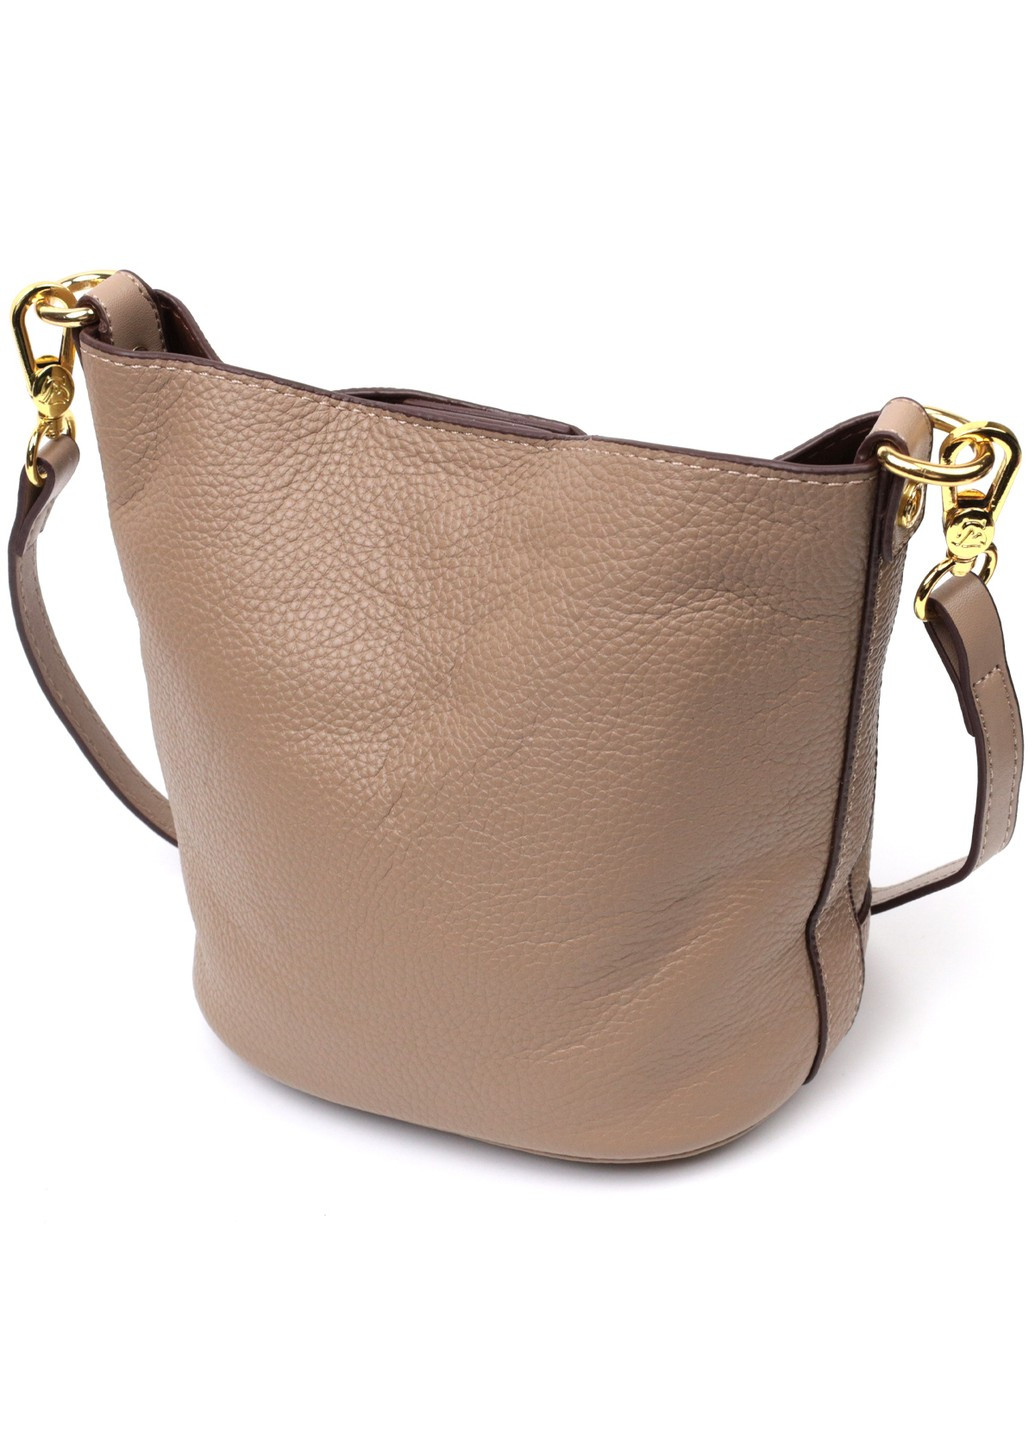 Женская сумка с автономной косметичкой внутри из натуральной кожи 22364 Бежевая Vintage (276461671)